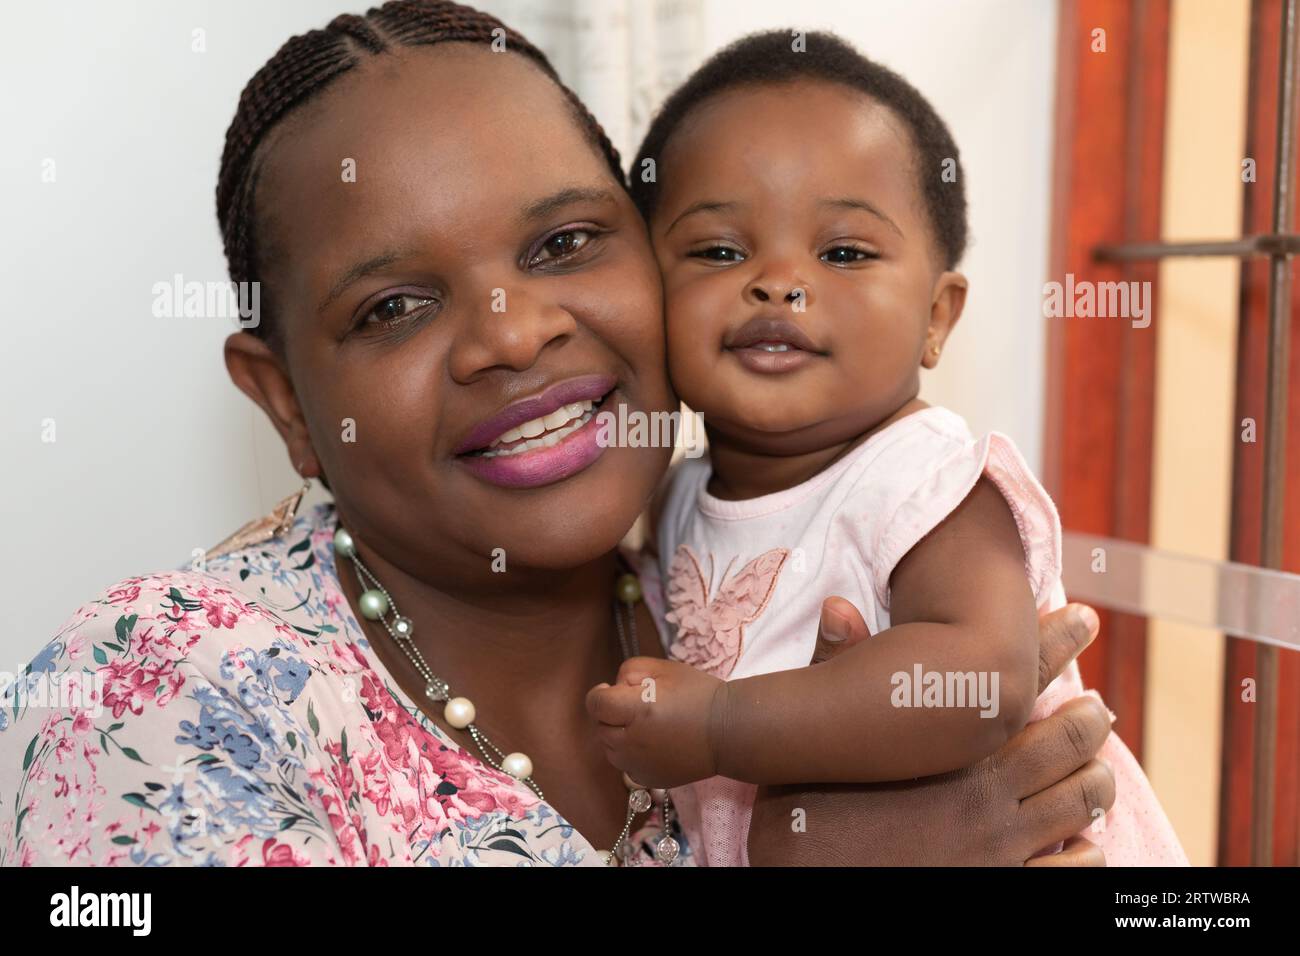 Nahaufnahme einer jungen schwarzen Frau und ihrer kleinen Tochter, die vor der Kamera lächeln Stockfoto